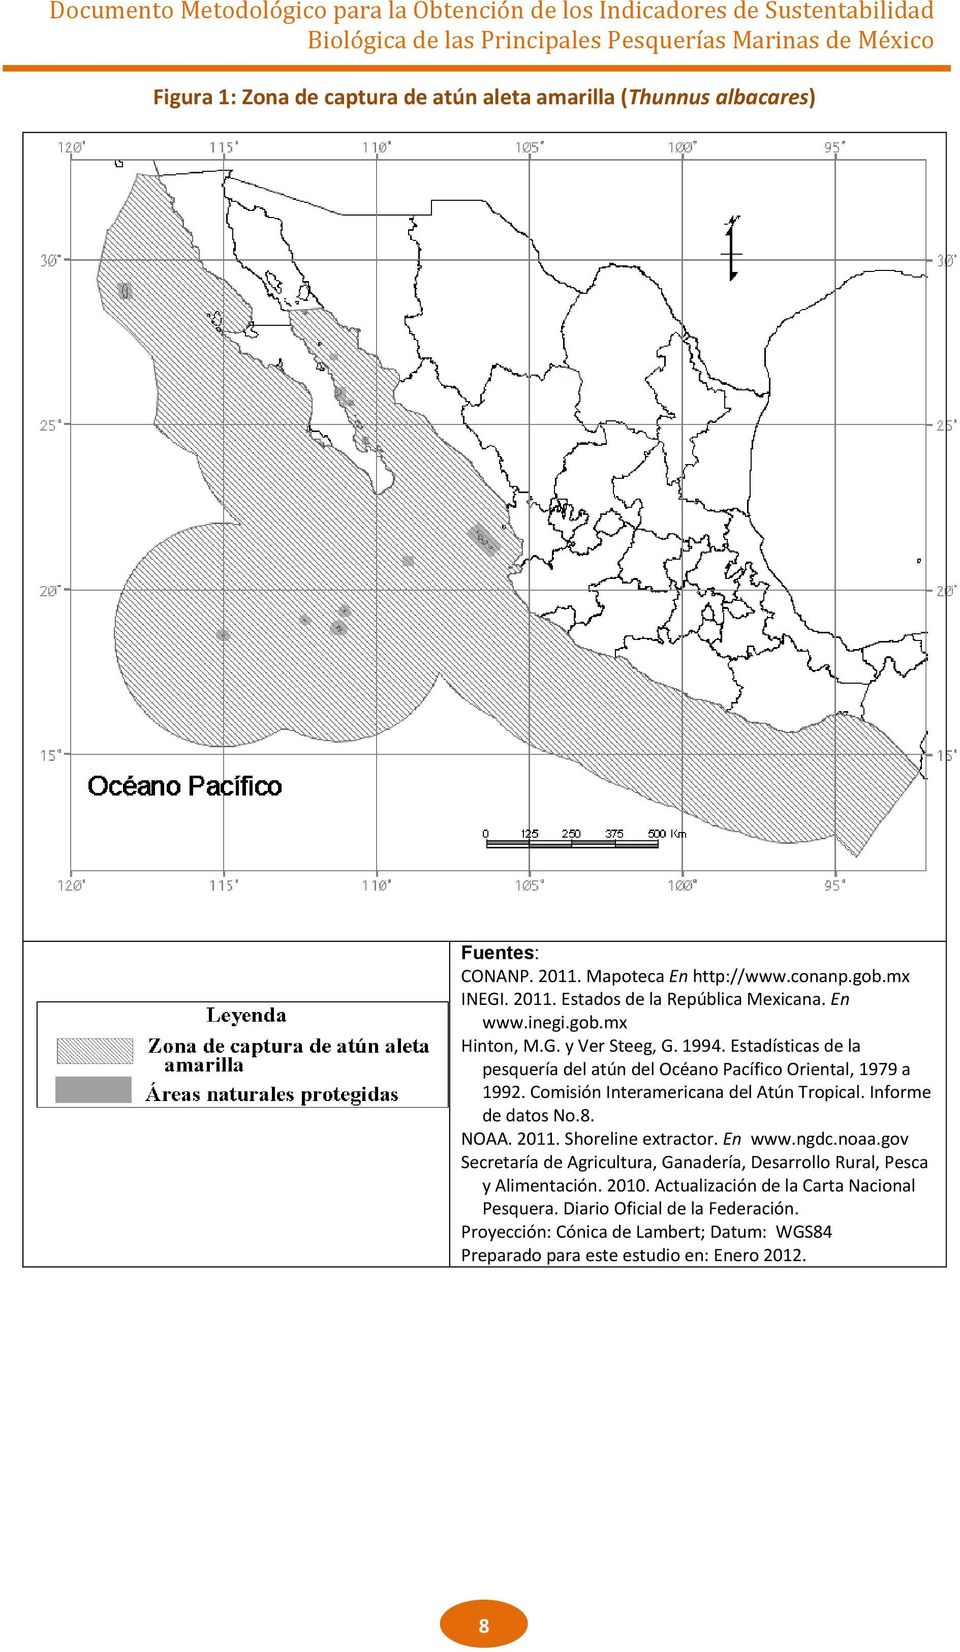 Comisión Interamericana del Atún Tropical. Informe de datos No.8. NOAA. 2011. Shoreline extractor. En www.ngdc.noaa.